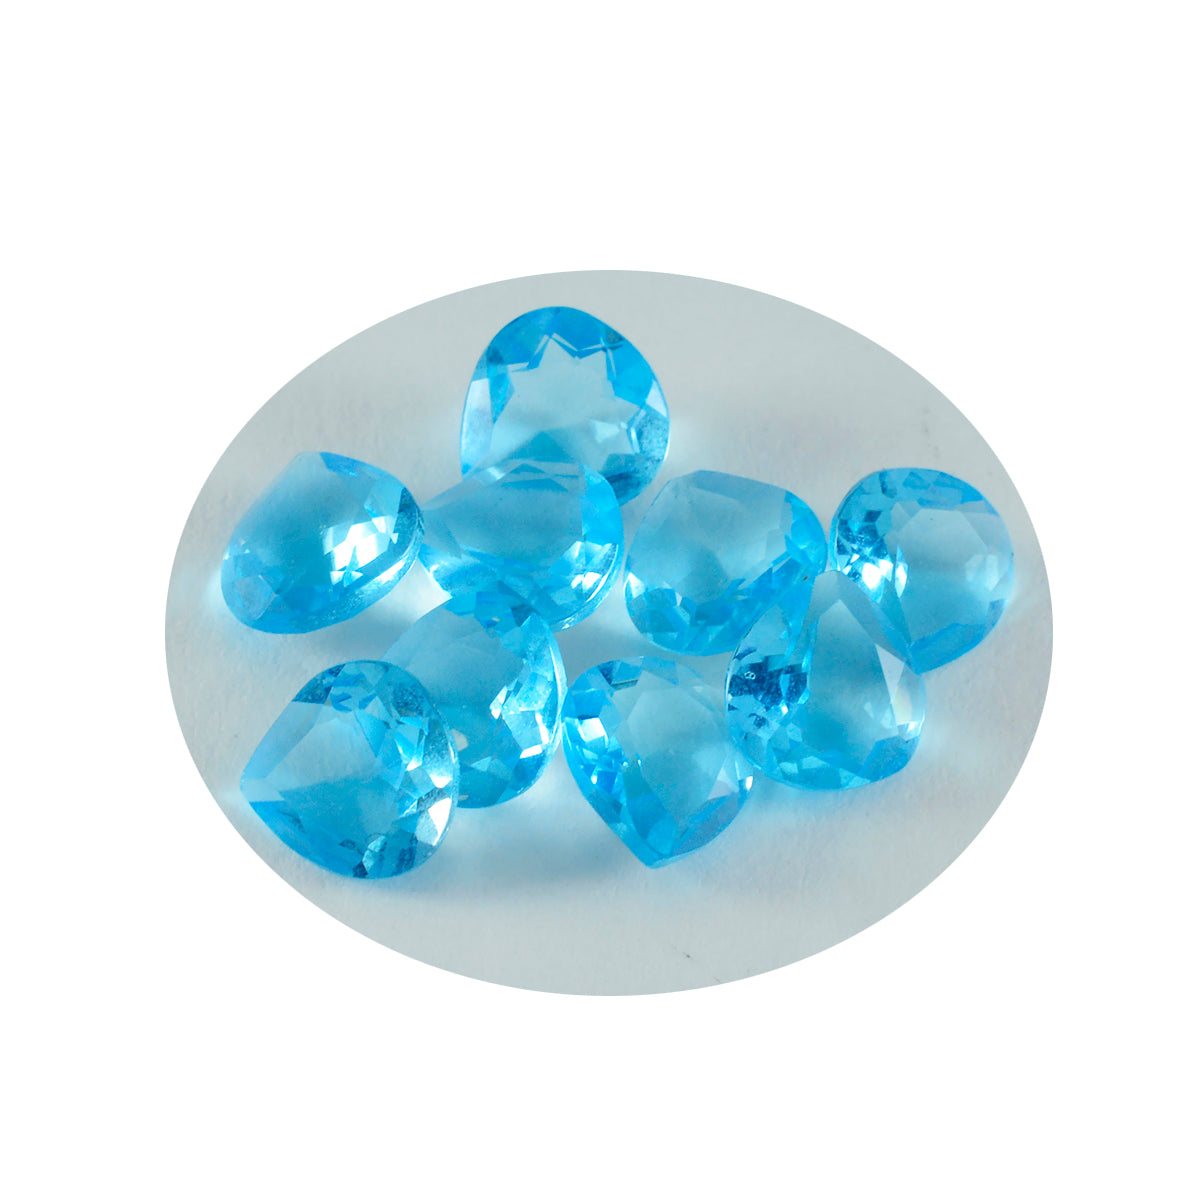 Riyogems 1 Stück blauer Topas, CZ, facettiert, 5 x 5 mm, Herzform, gut aussehender Qualitätsstein